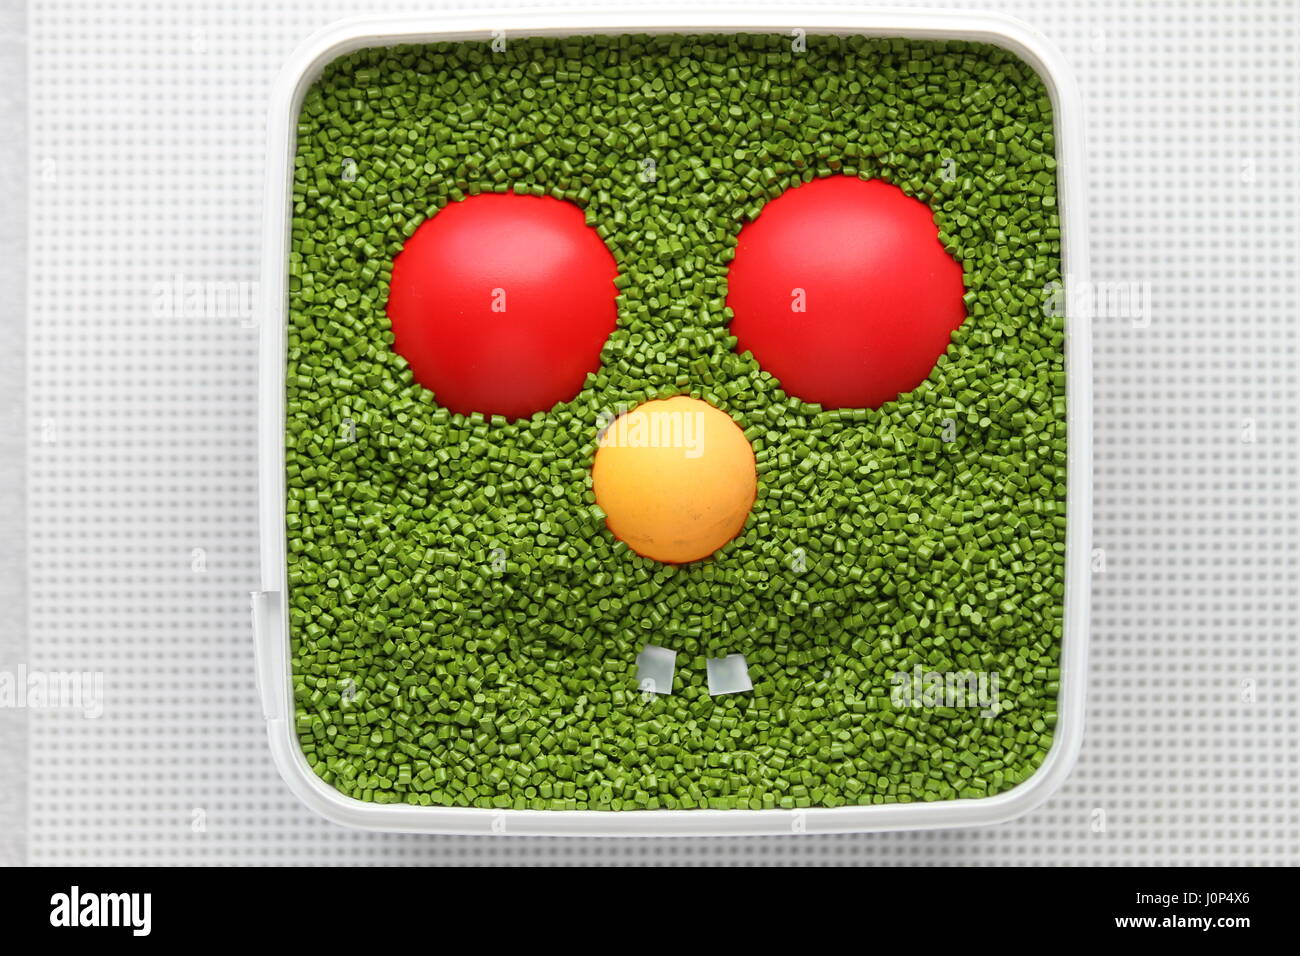 Emoticon verde con ojos rojos, nariz amarilla sobre un fondo blanco. Para el uso de emoticonos en los juegos de ordenador y diseño web. Diseño creativo. Sonrisa. Plástico. Foto de stock